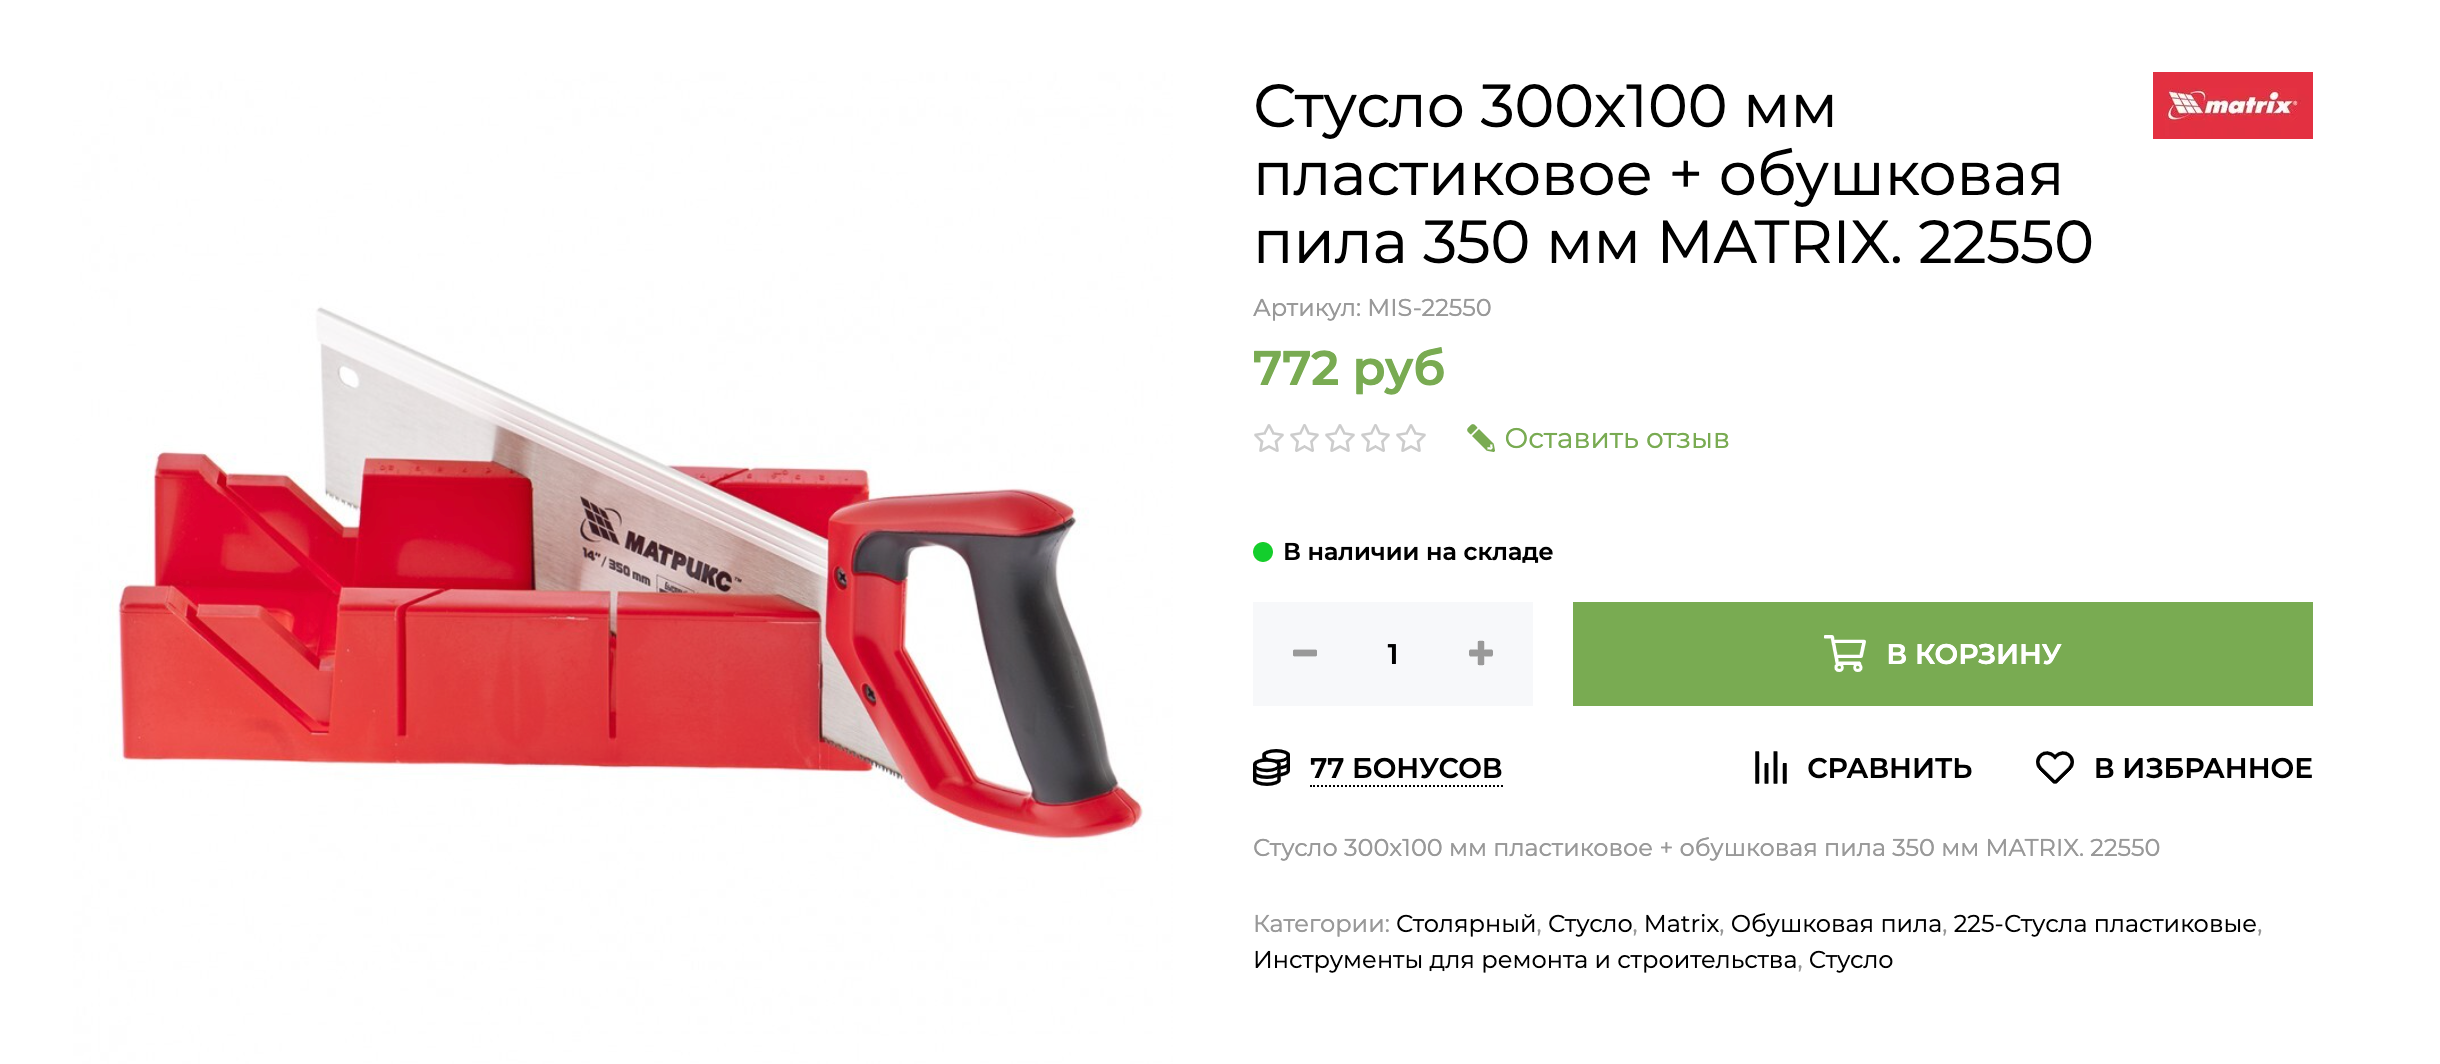 Иногда ножовку продают сразу в комплекте со стуслом. Источник: shuruping.ru